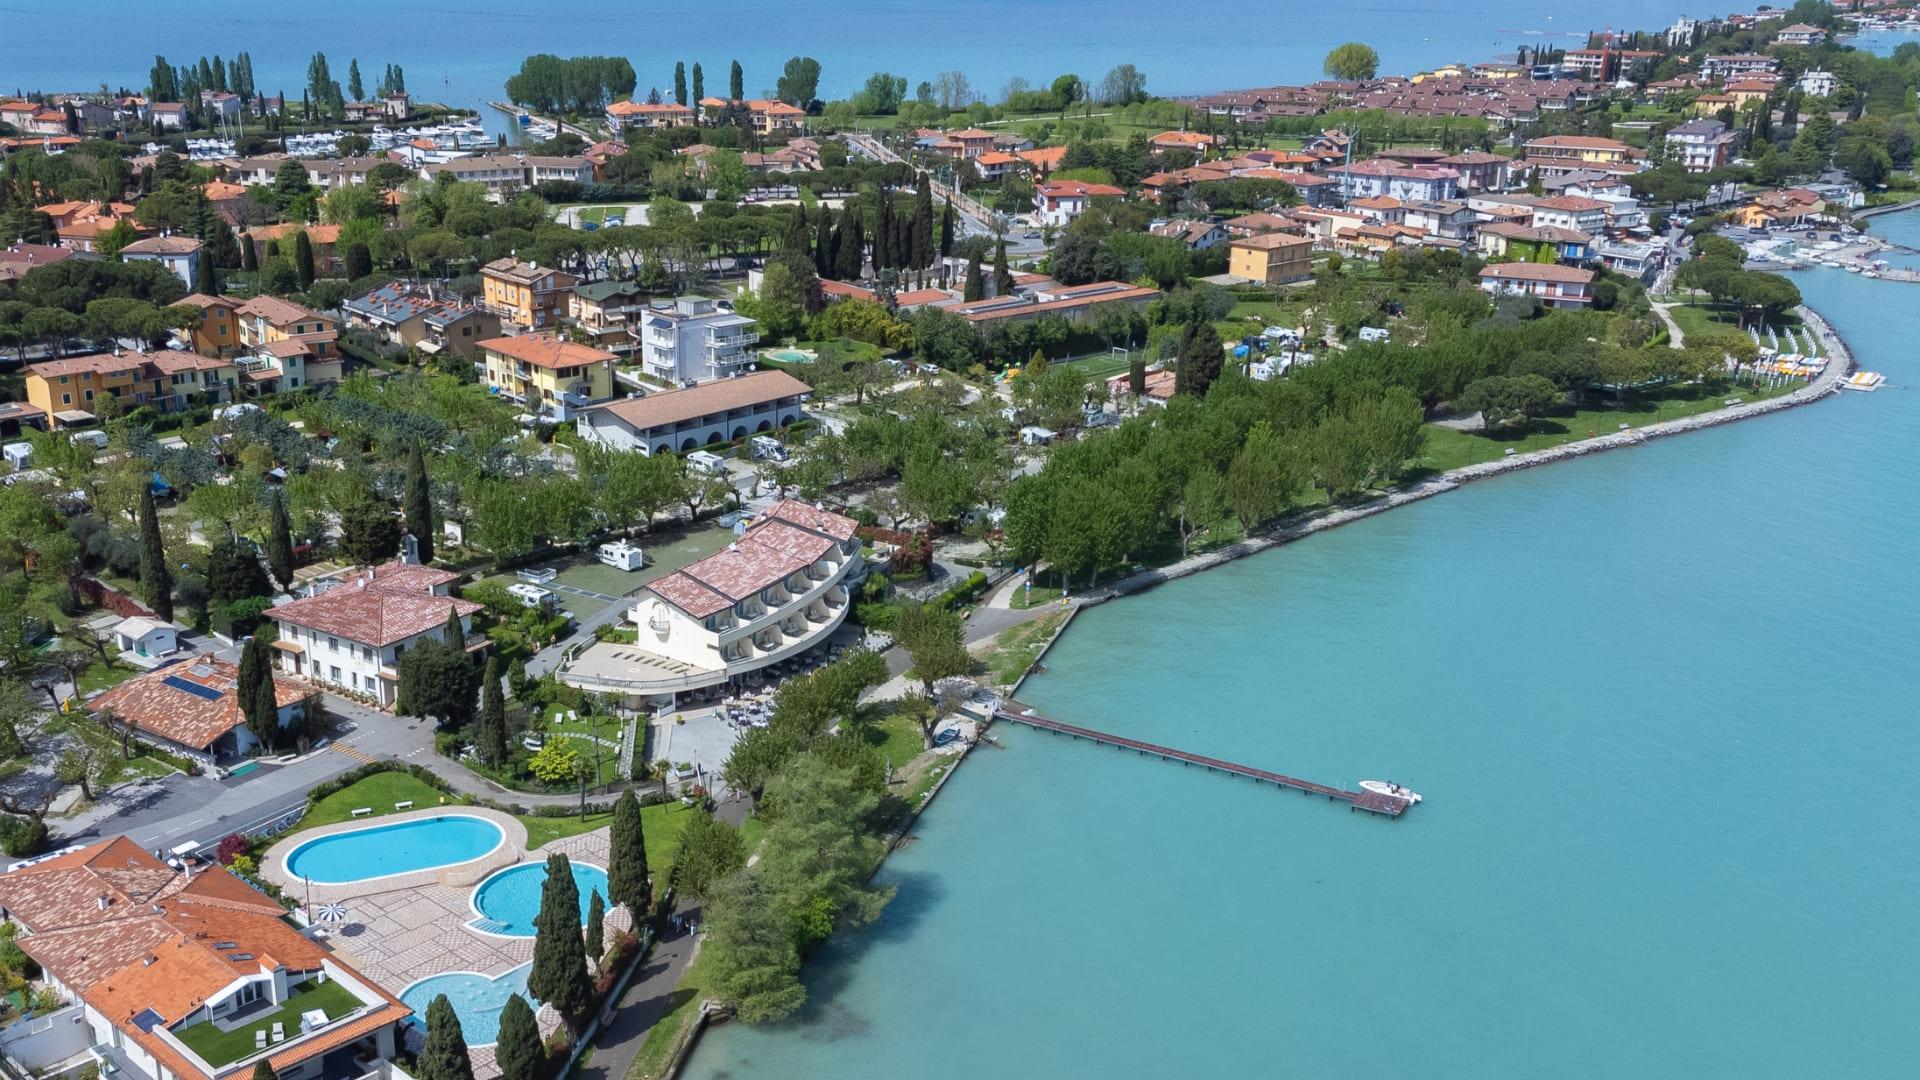 Vue aérienne d'une ville côtière avec piscine et lac.